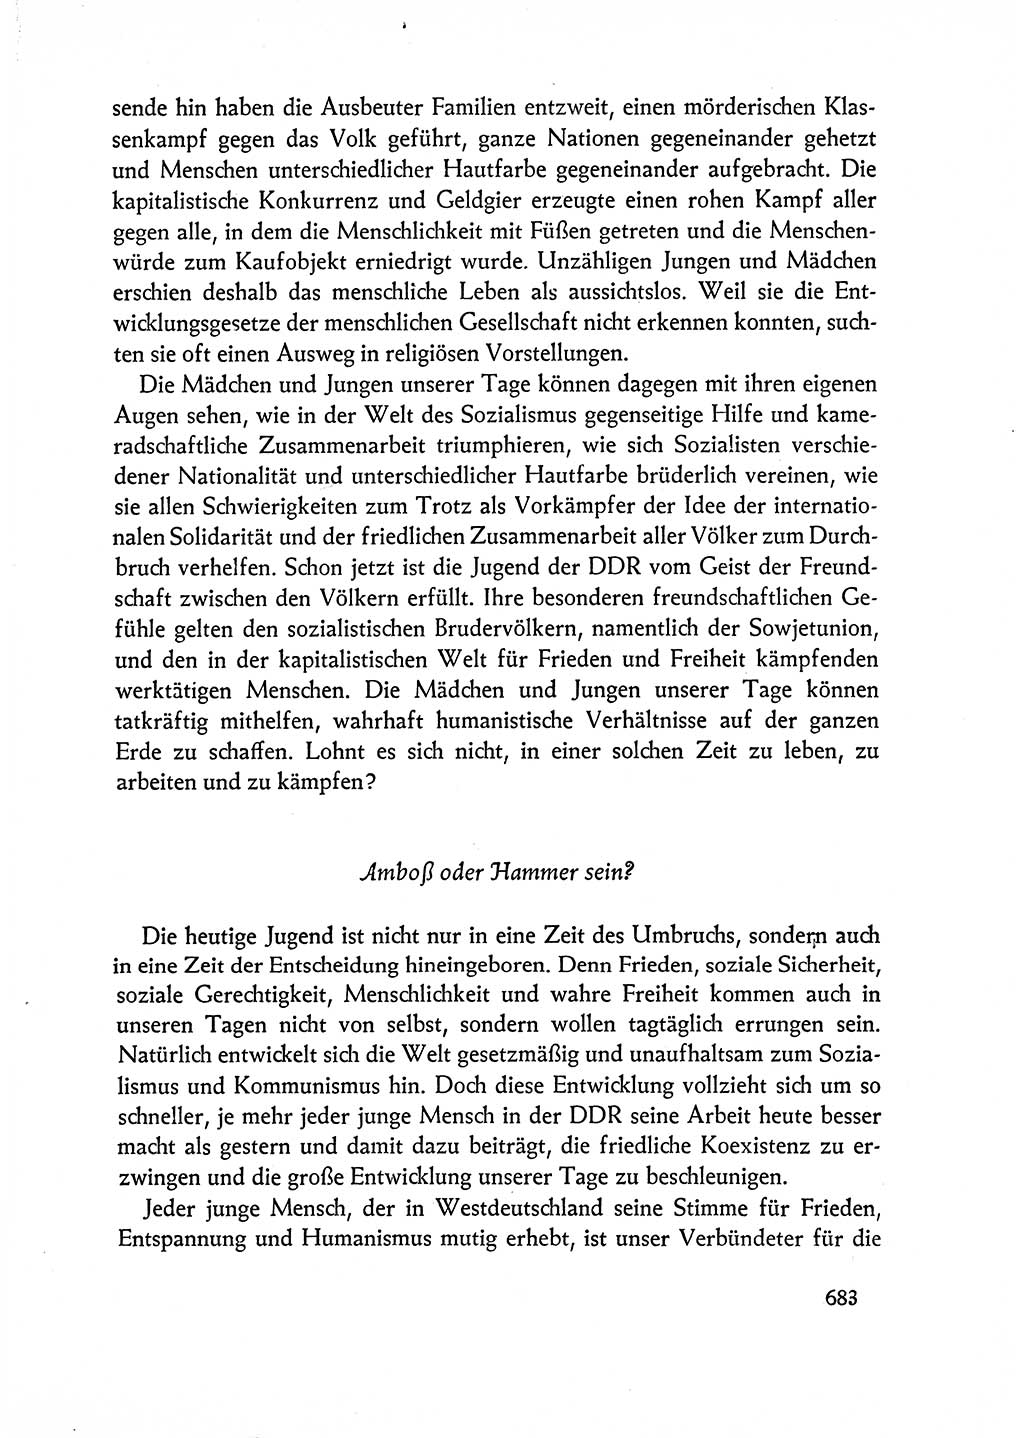 Dokumente der Sozialistischen Einheitspartei Deutschlands (SED) [Deutsche Demokratische Republik (DDR)] 1962-1963, Seite 683 (Dok. SED DDR 1962-1963, S. 683)